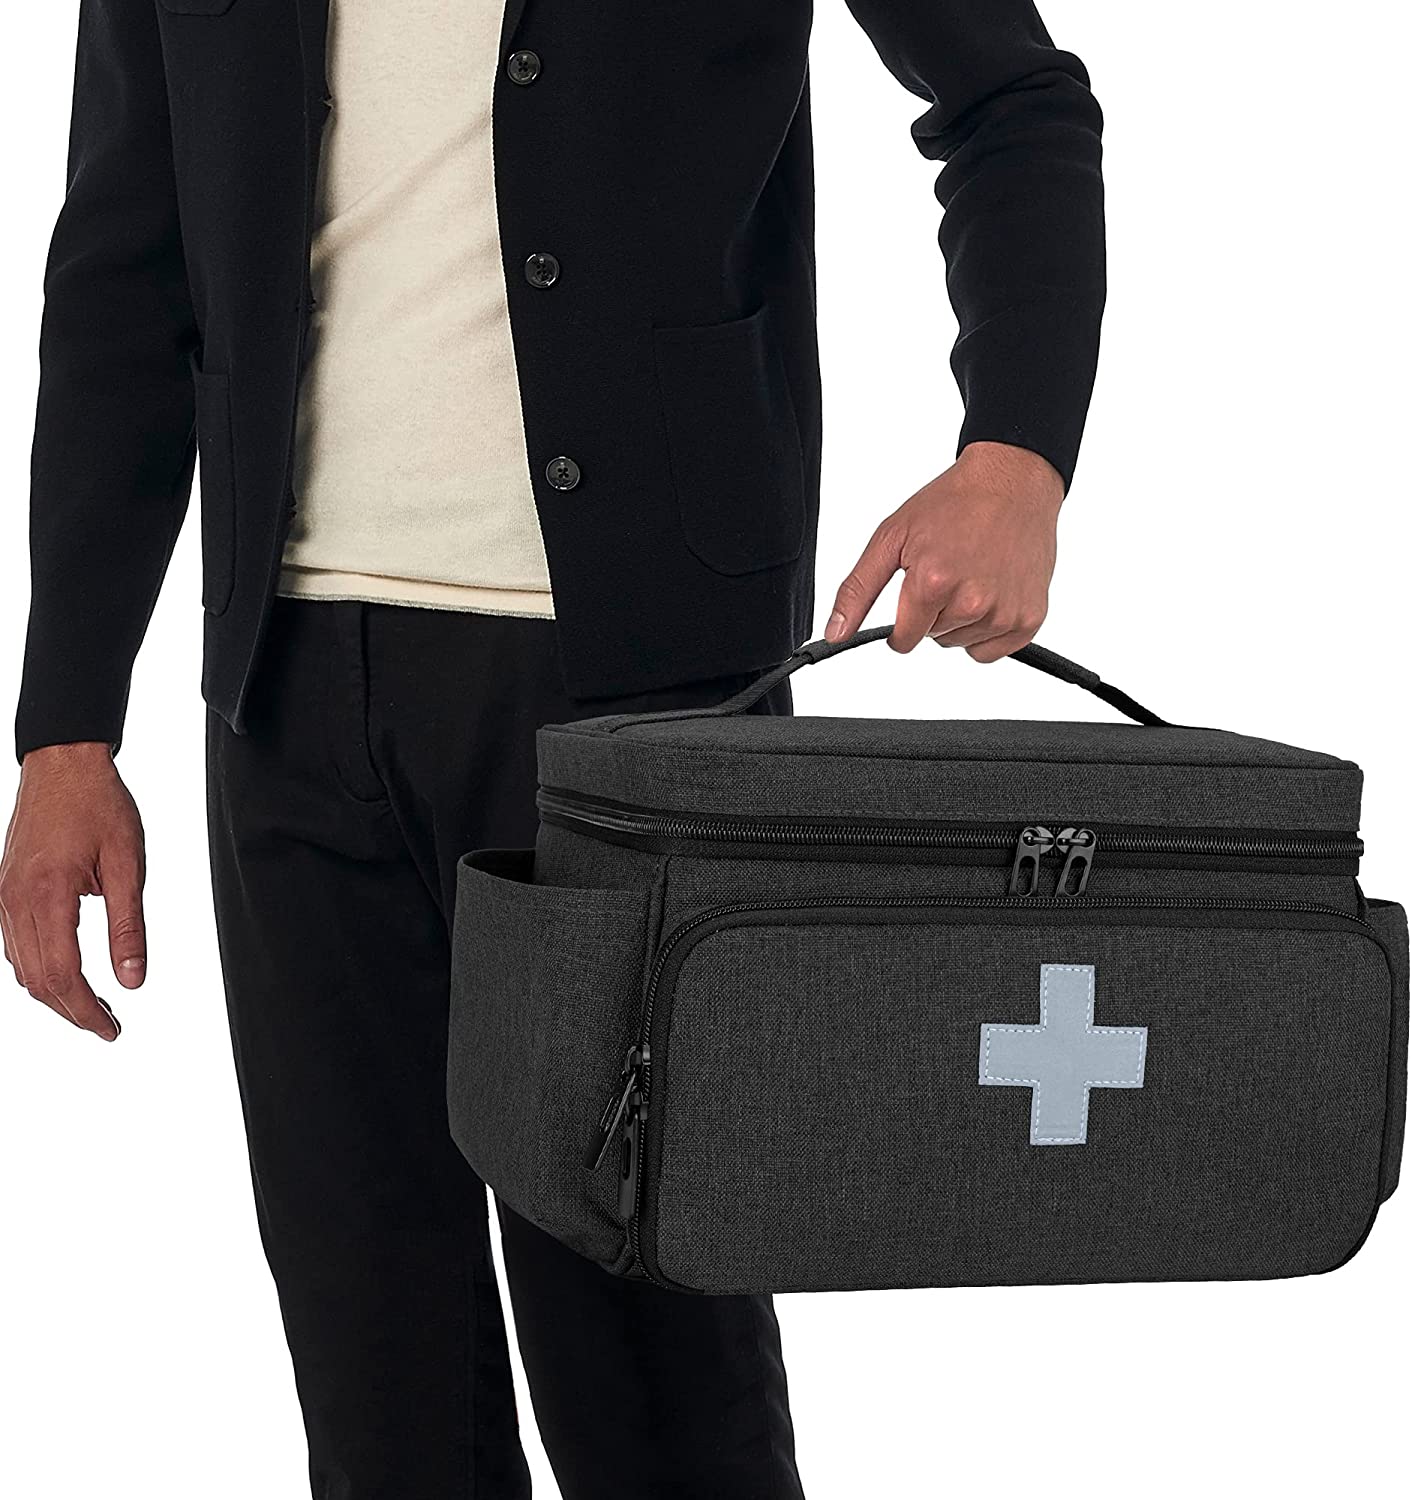 CURMIO Small Medicine Storage Bag Empty, Family First Aid Organizer Box  for